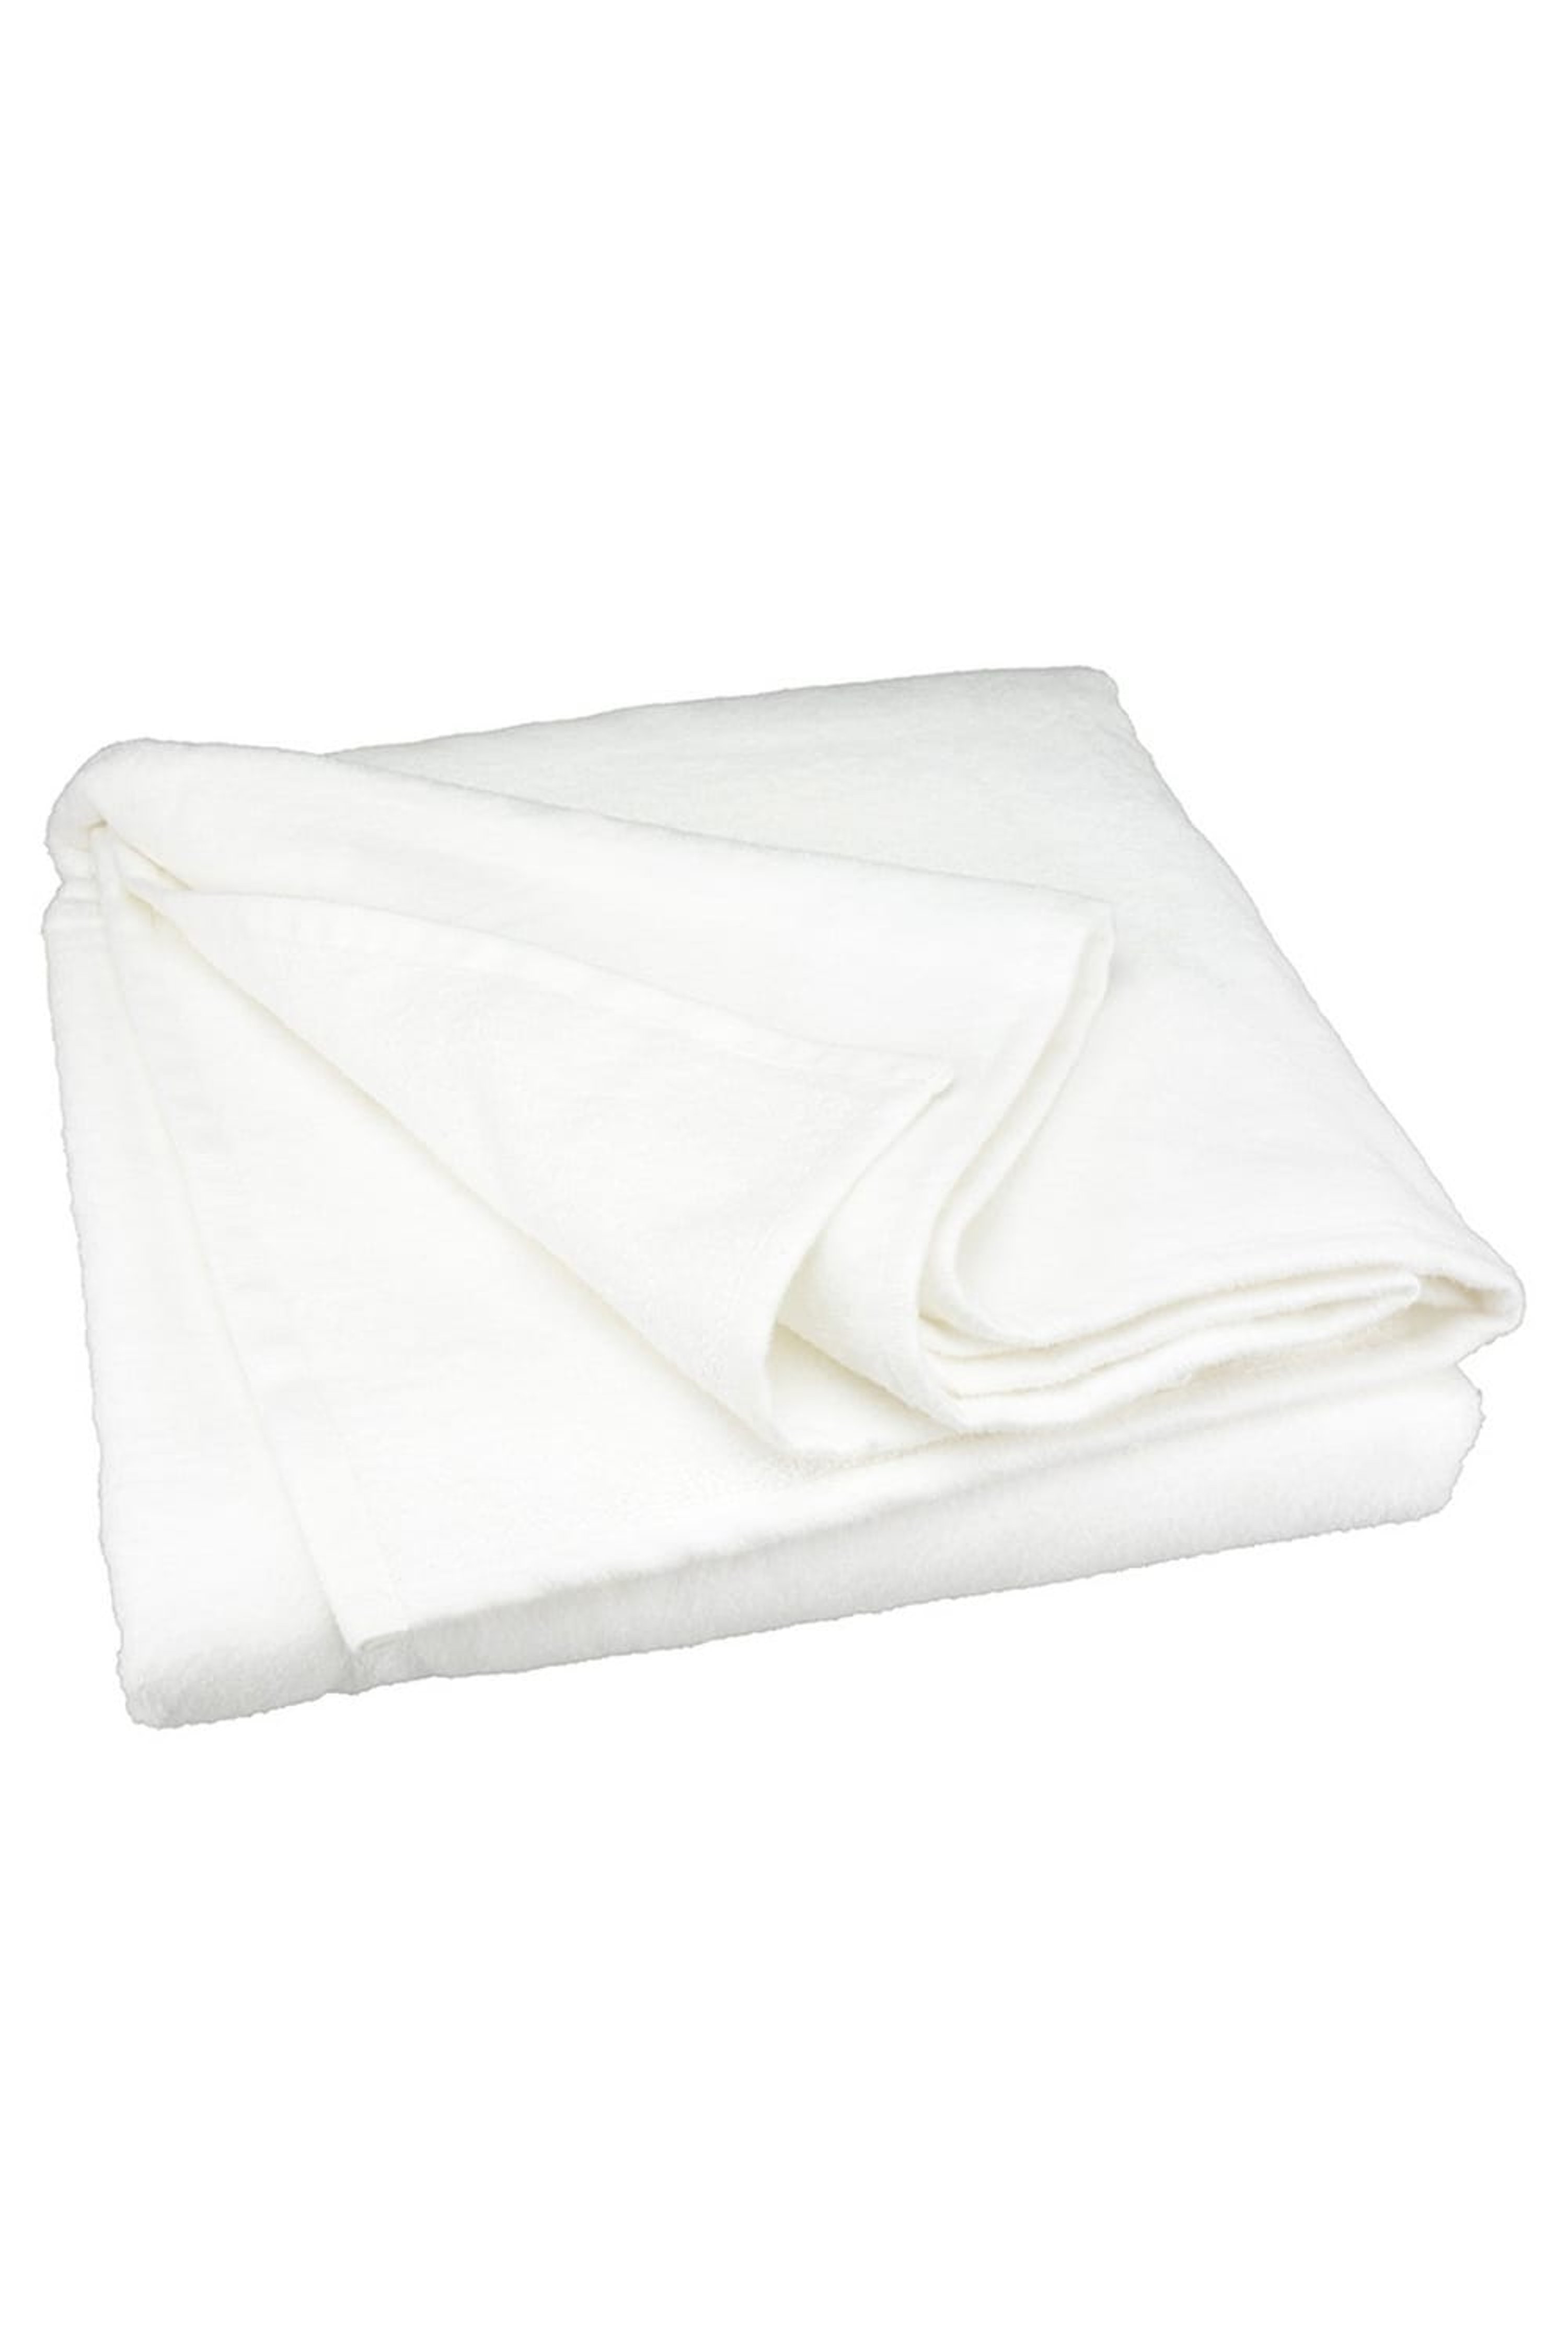 A&R TOWELS A&R TOWELS A&R TOWELS SUBLI-ME ALL-OVER BEACH TOWEL (WHITE) (GUEST)